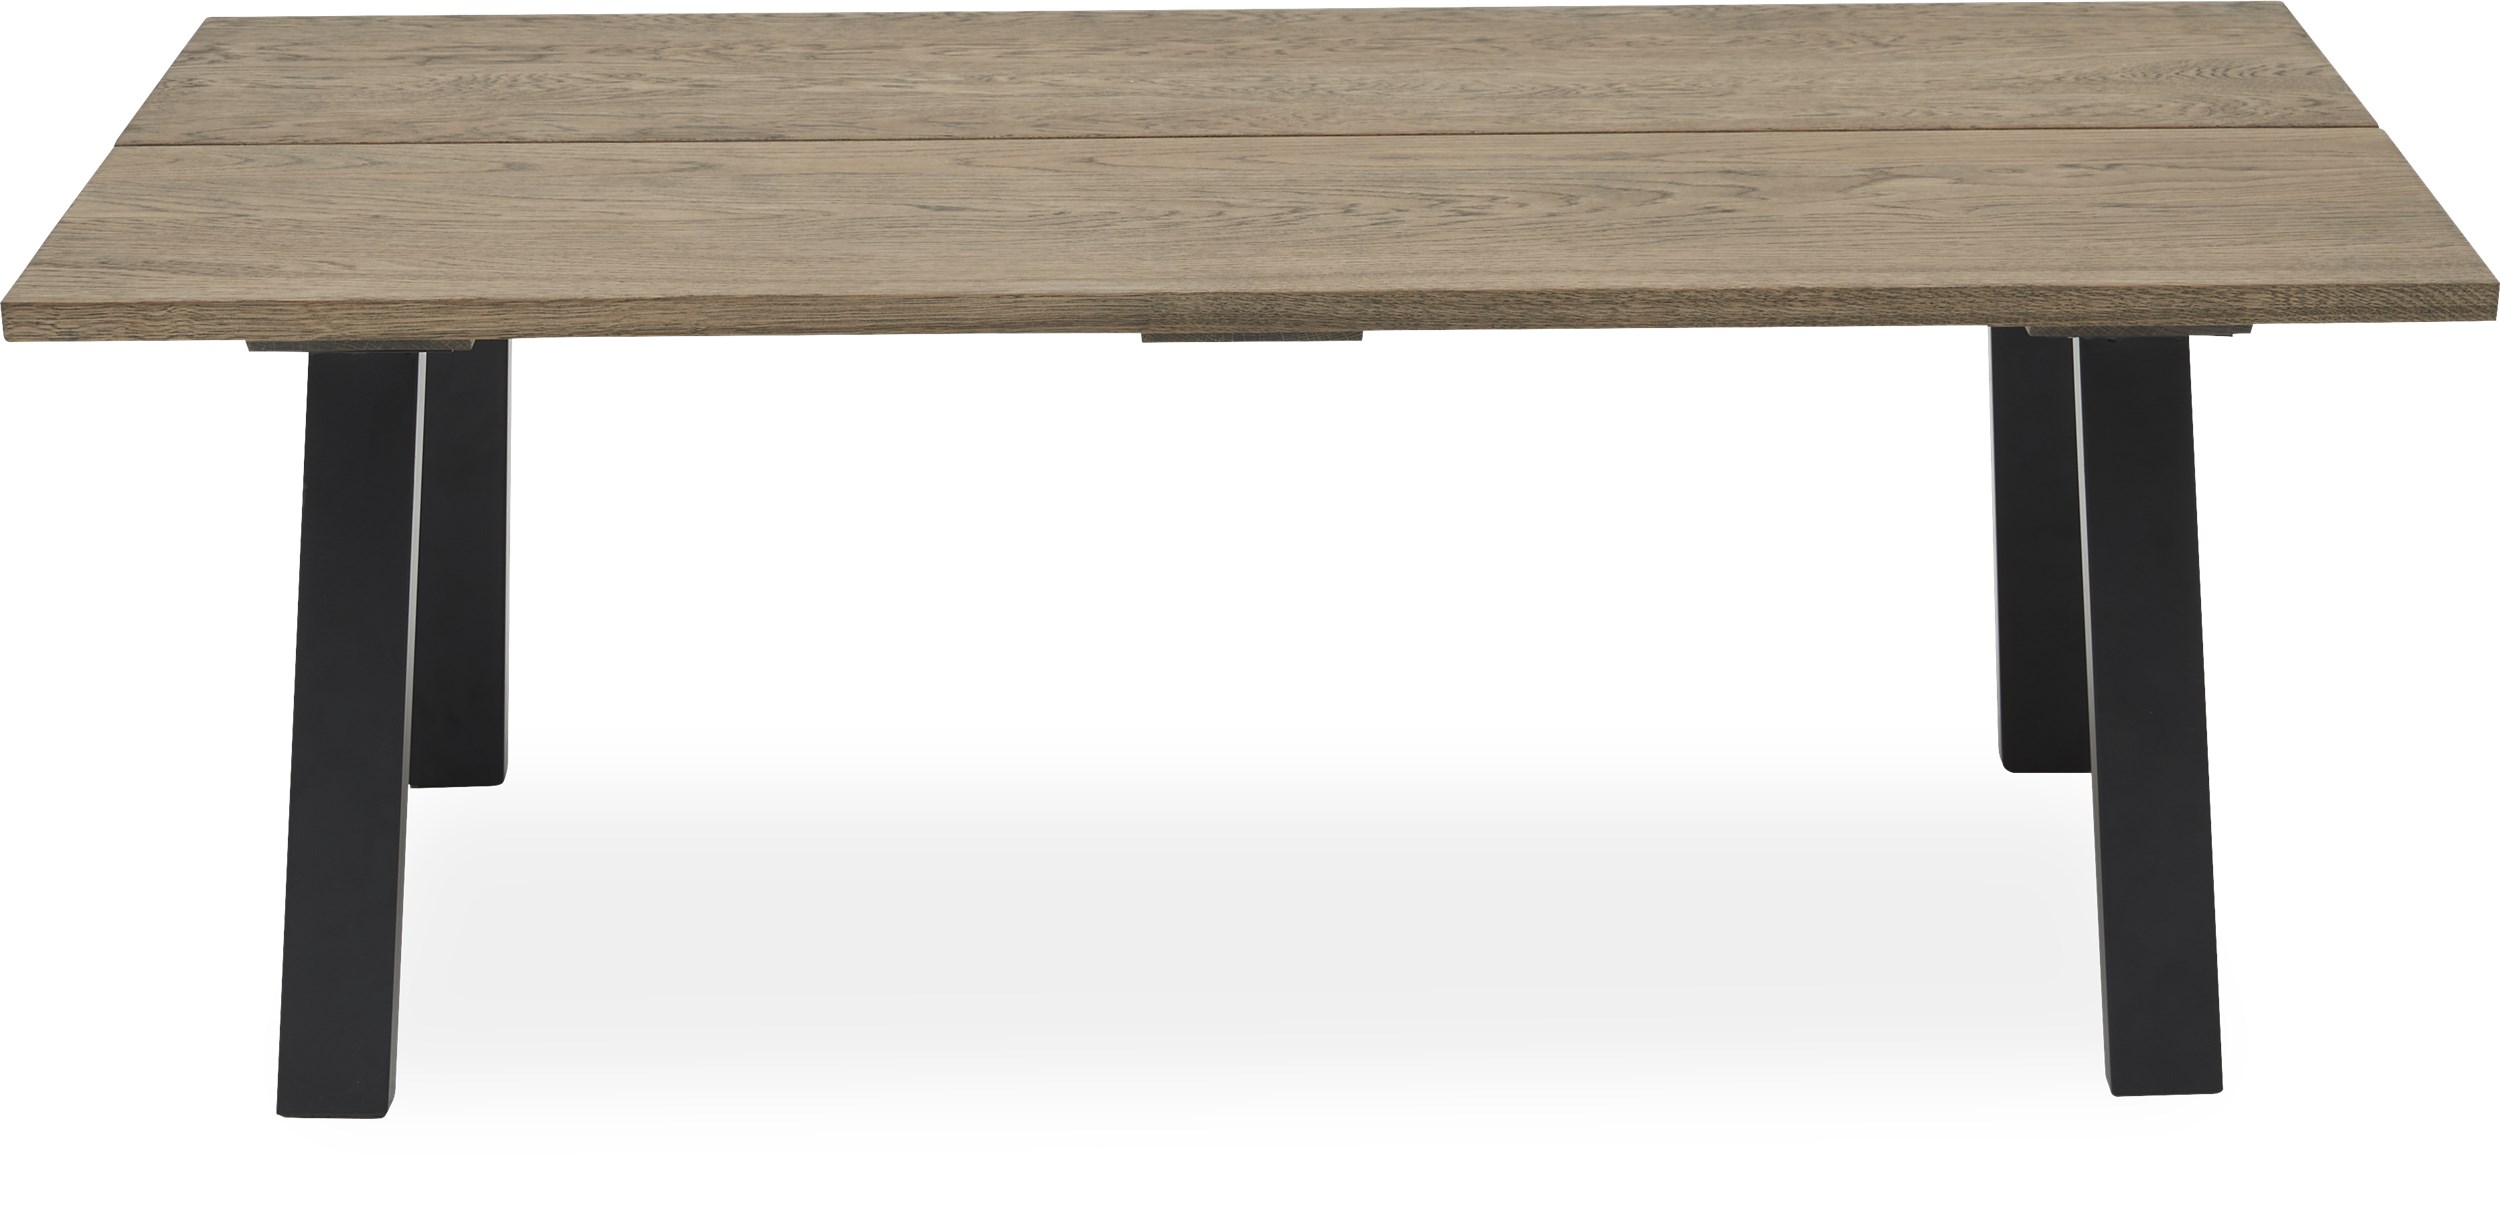 Real Soffbord 130 x 45 x 70 cm - Massiv mörk gråoljad ek, 2 brädor med snedställd kant och ben i svart, pulverlackerad metall